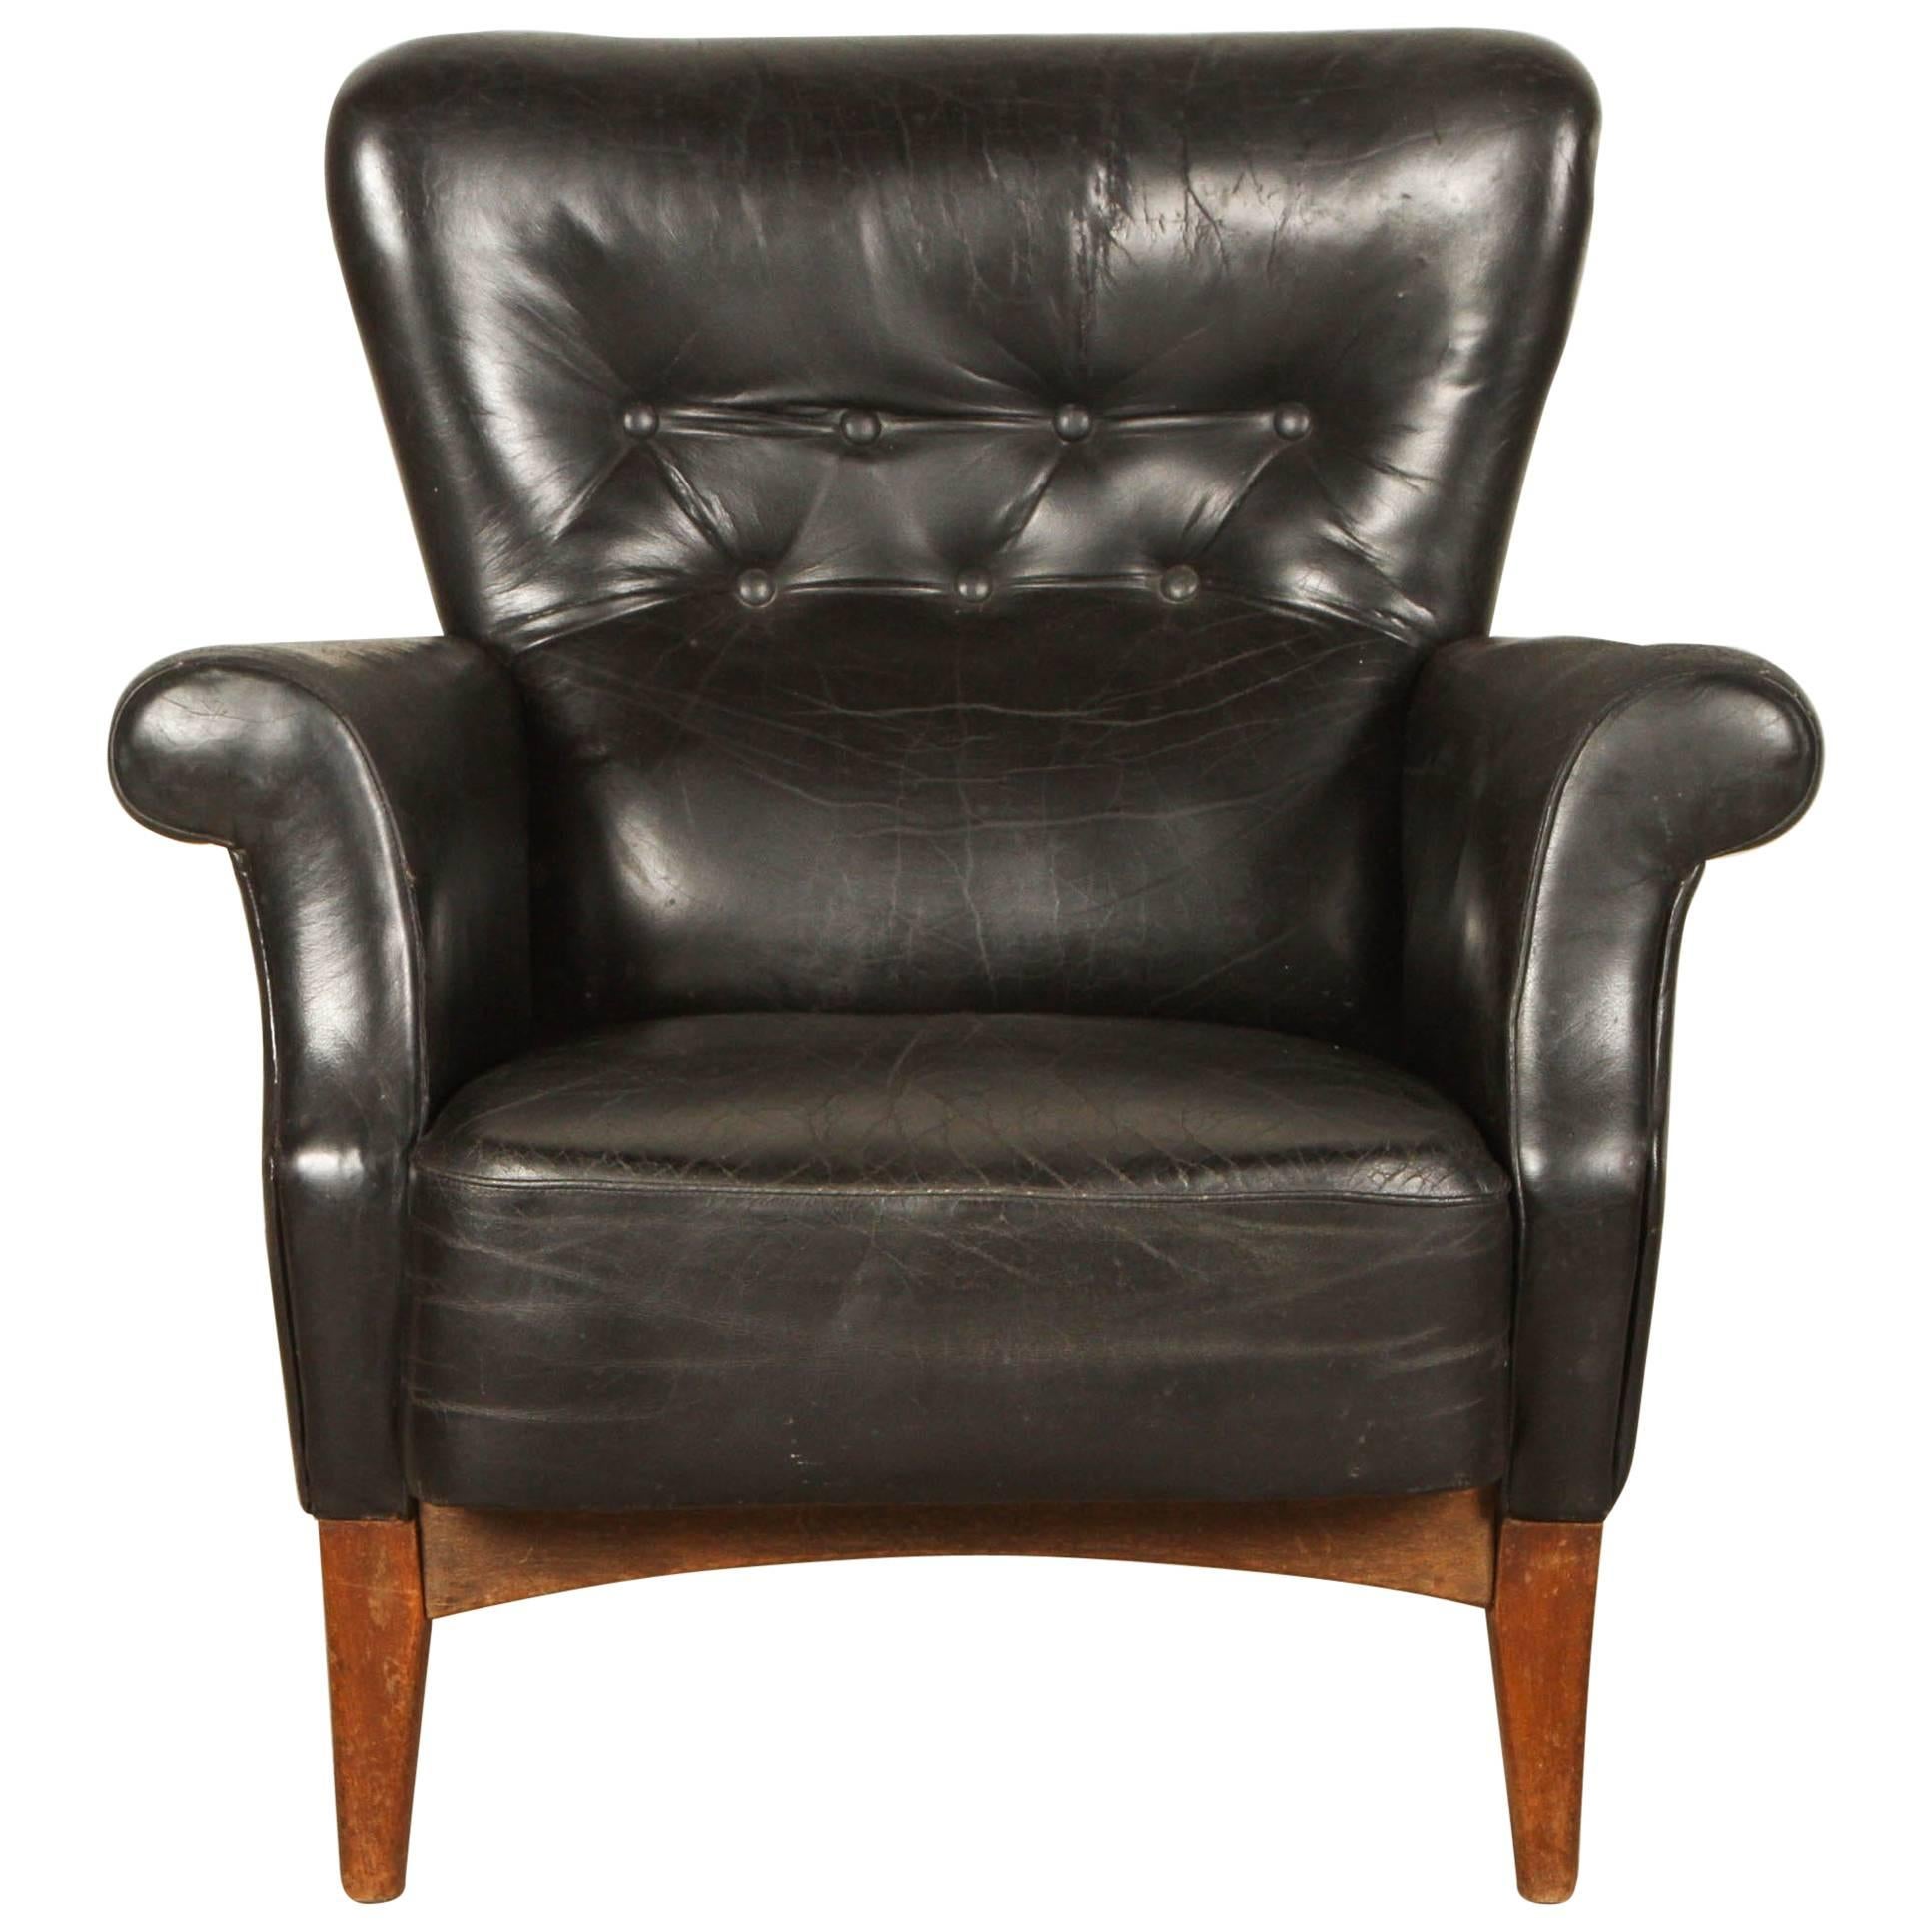 Black Leather Armchair by Finn Juhl